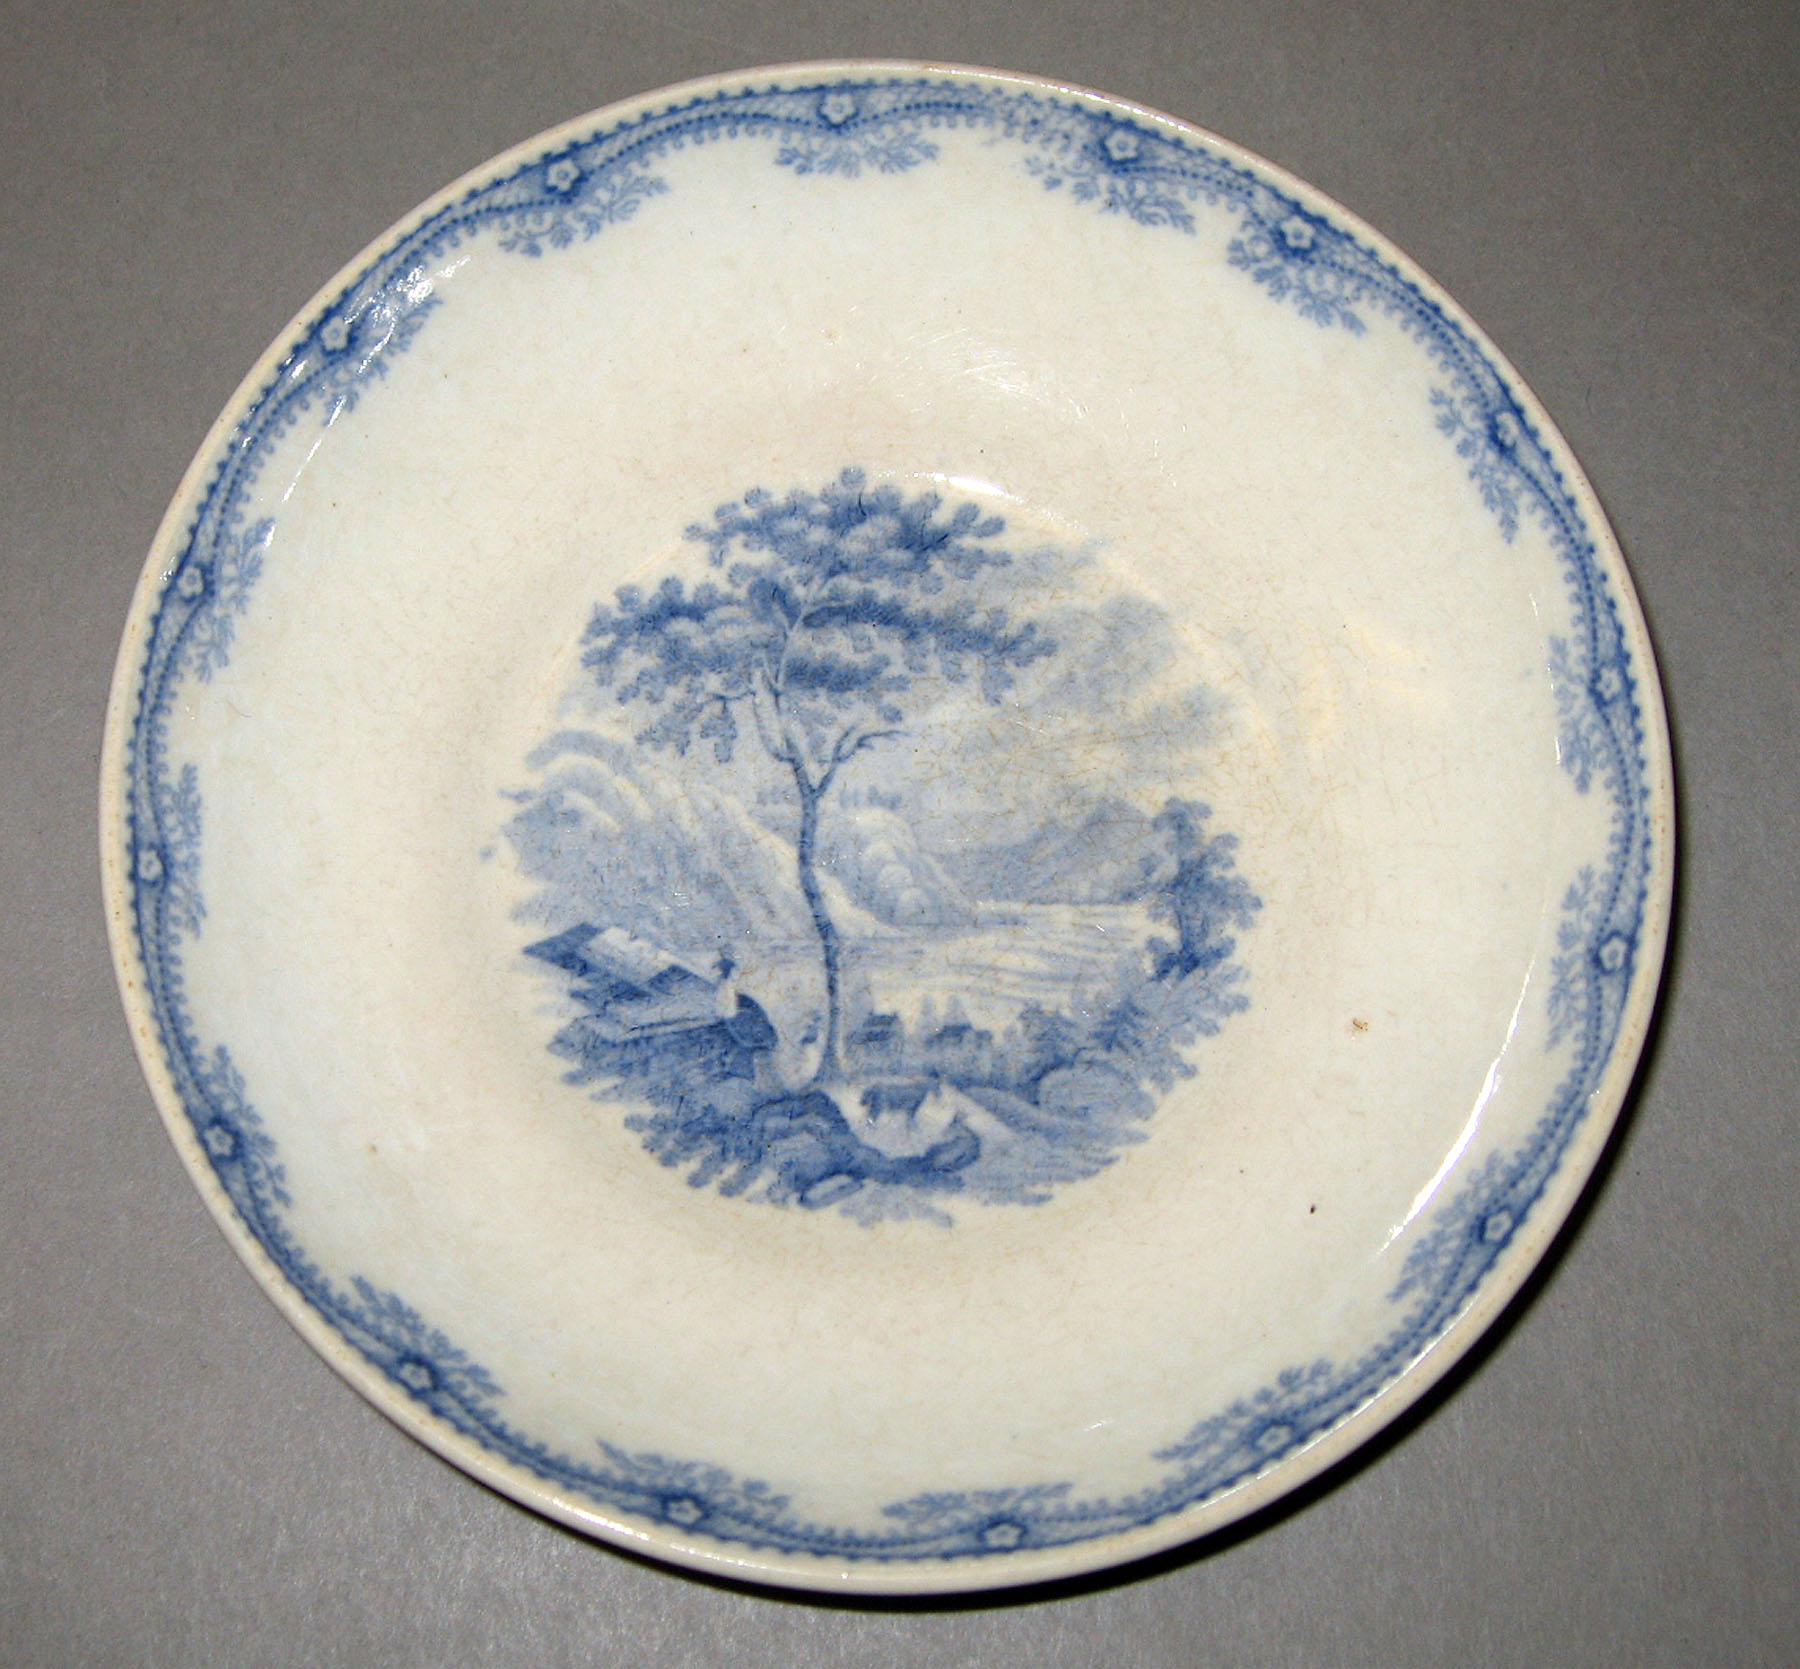 1965.2915.010 Ridgway earthenware plate